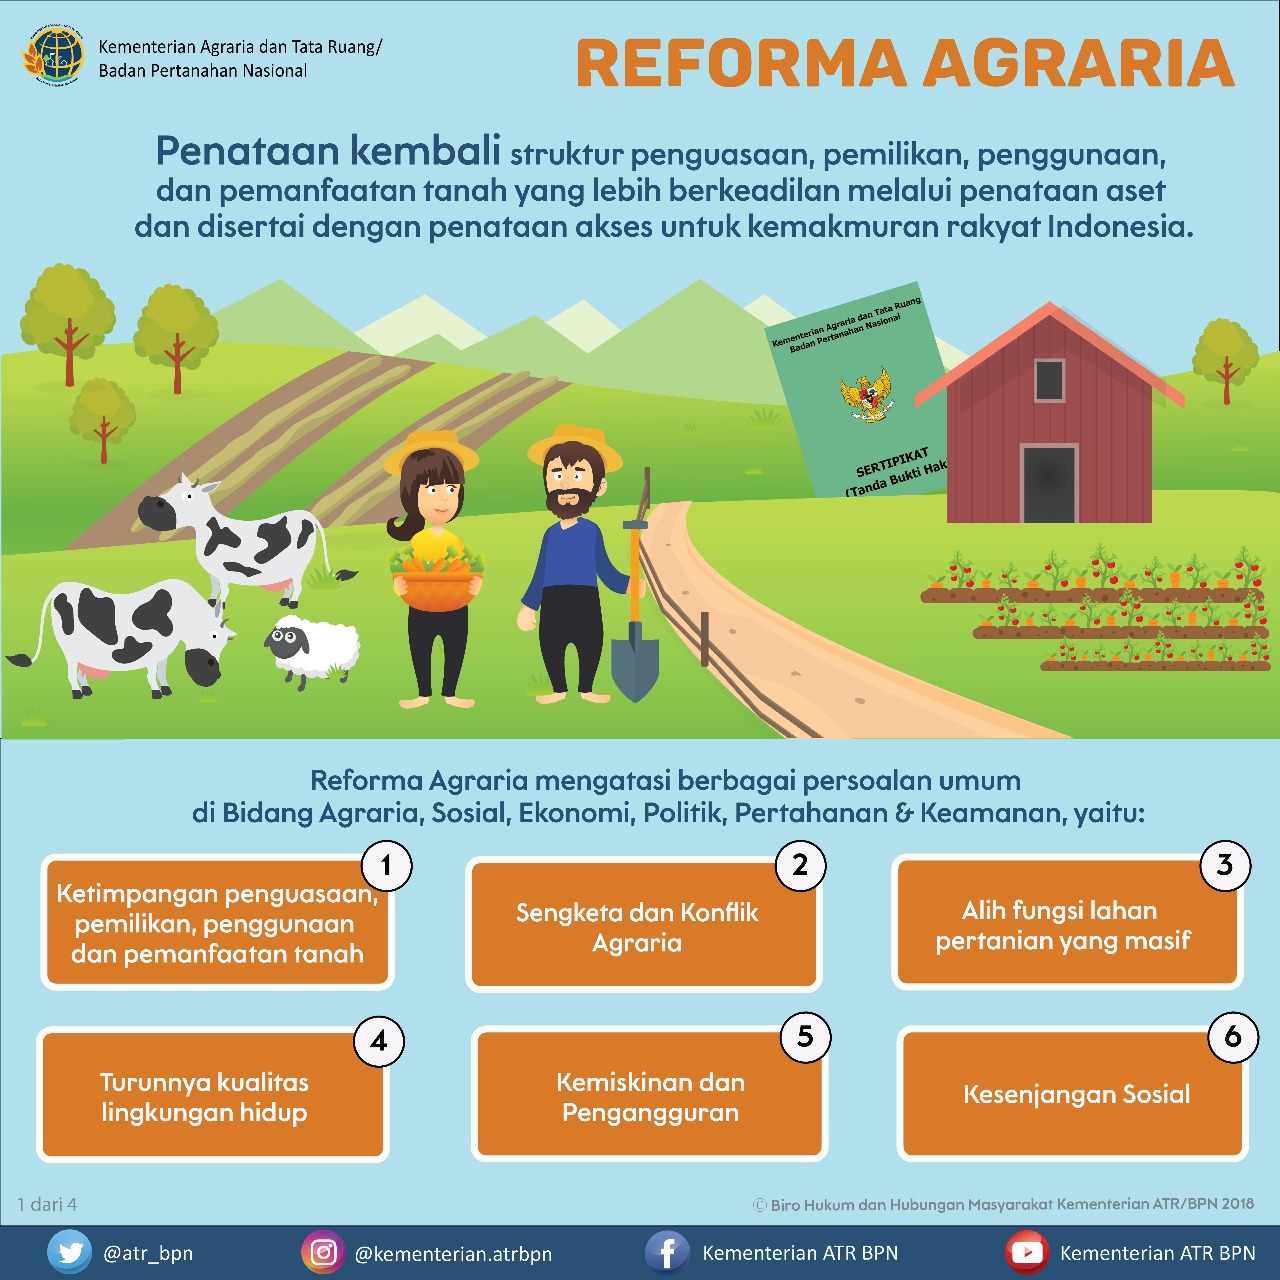 Apa tujuan utama dari program redistribusi untuk pemerataan pembangunan indonesia